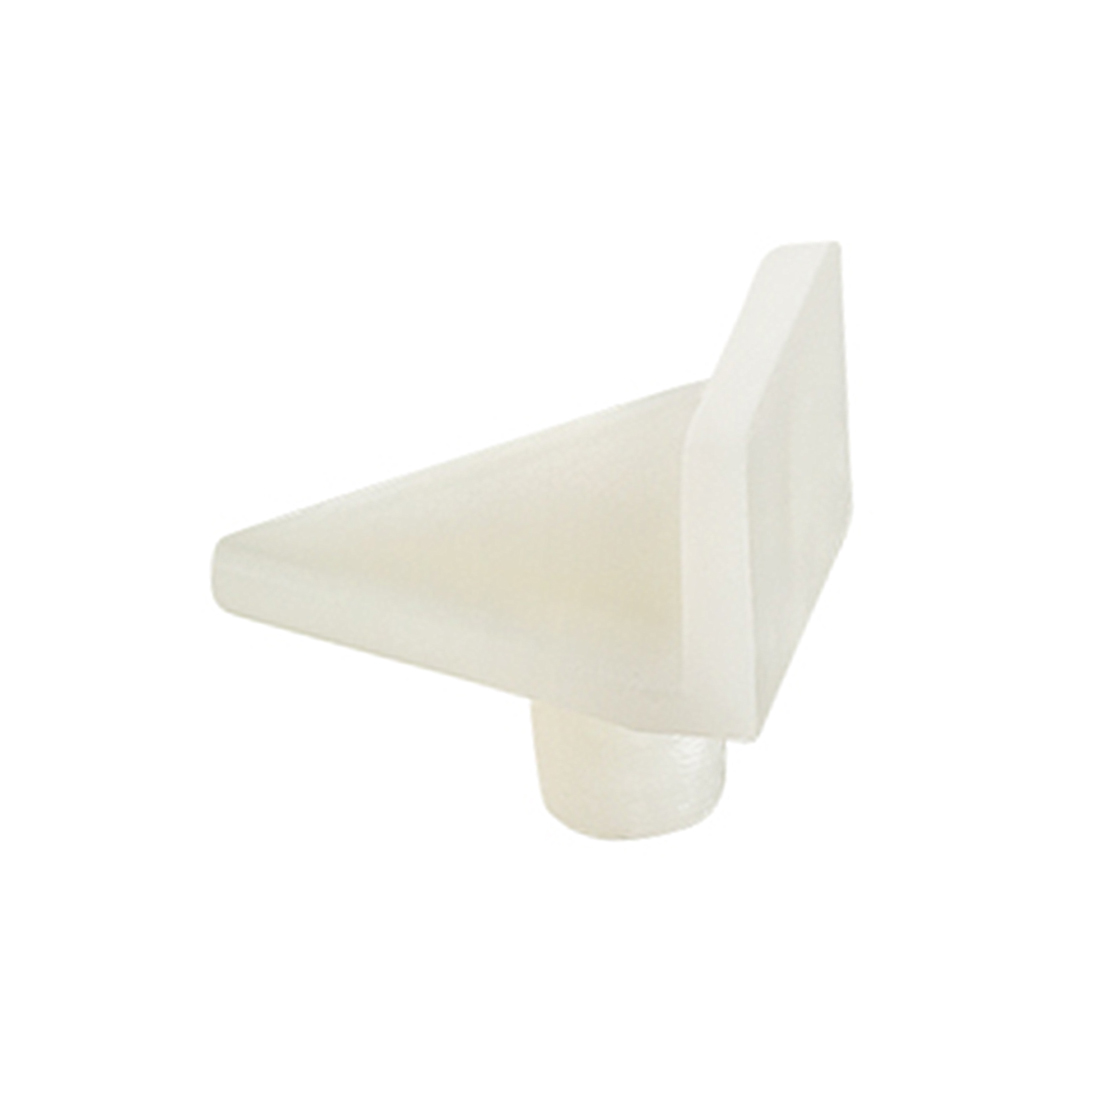 REGALWOVEN Plastic Shelf Support Pegs,5mm Cabinet Shelf Clip,Shelf Bracket Hoder Peg,for Kitchen Furniture Book Shelves,50Pcs - image 4 of 4